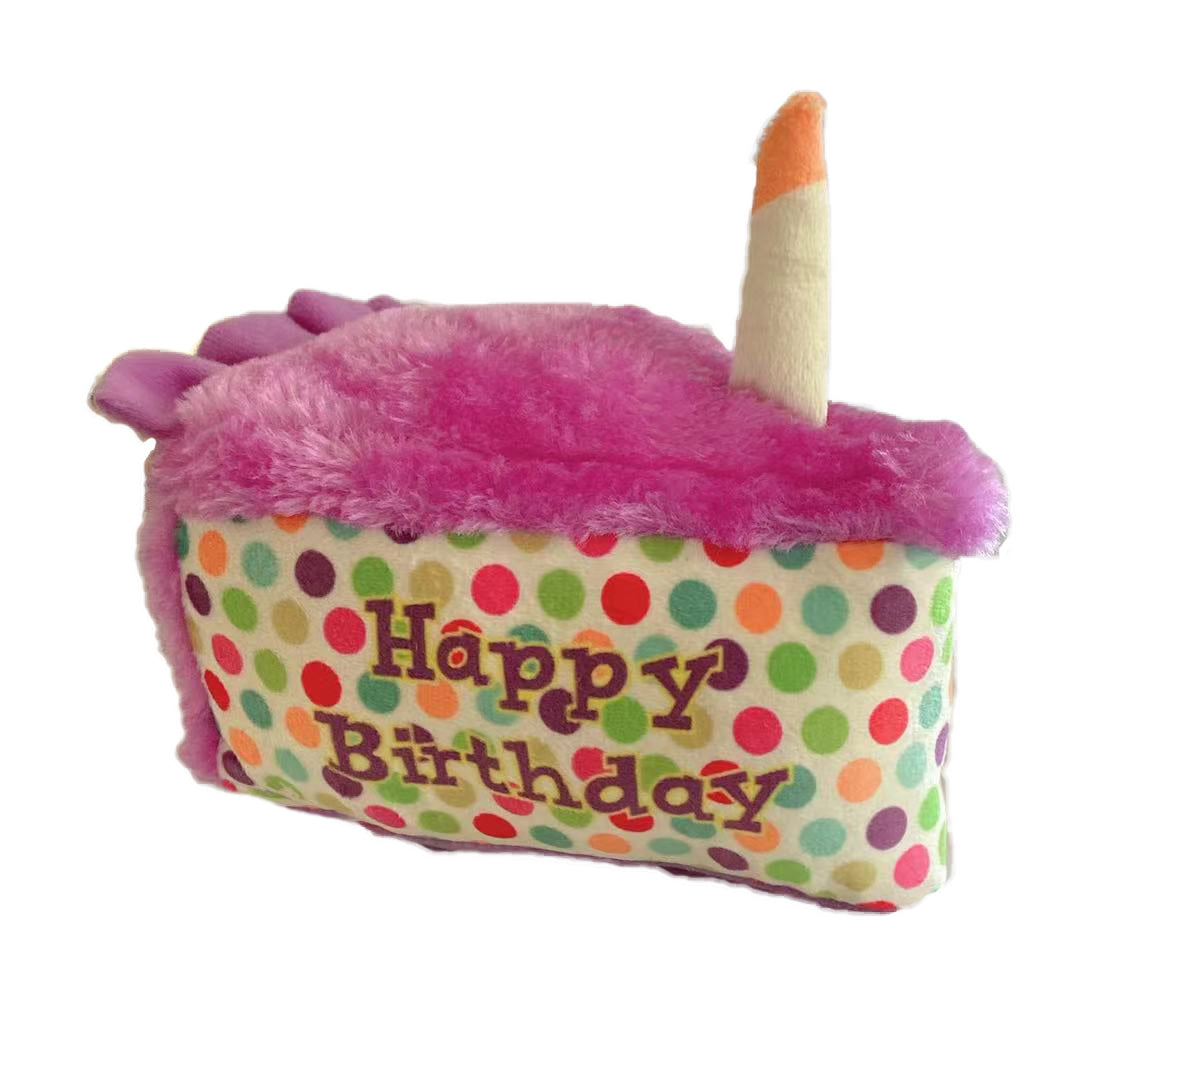 Petlou Birthday Cake Plush Toy - 6" Birthday Cake